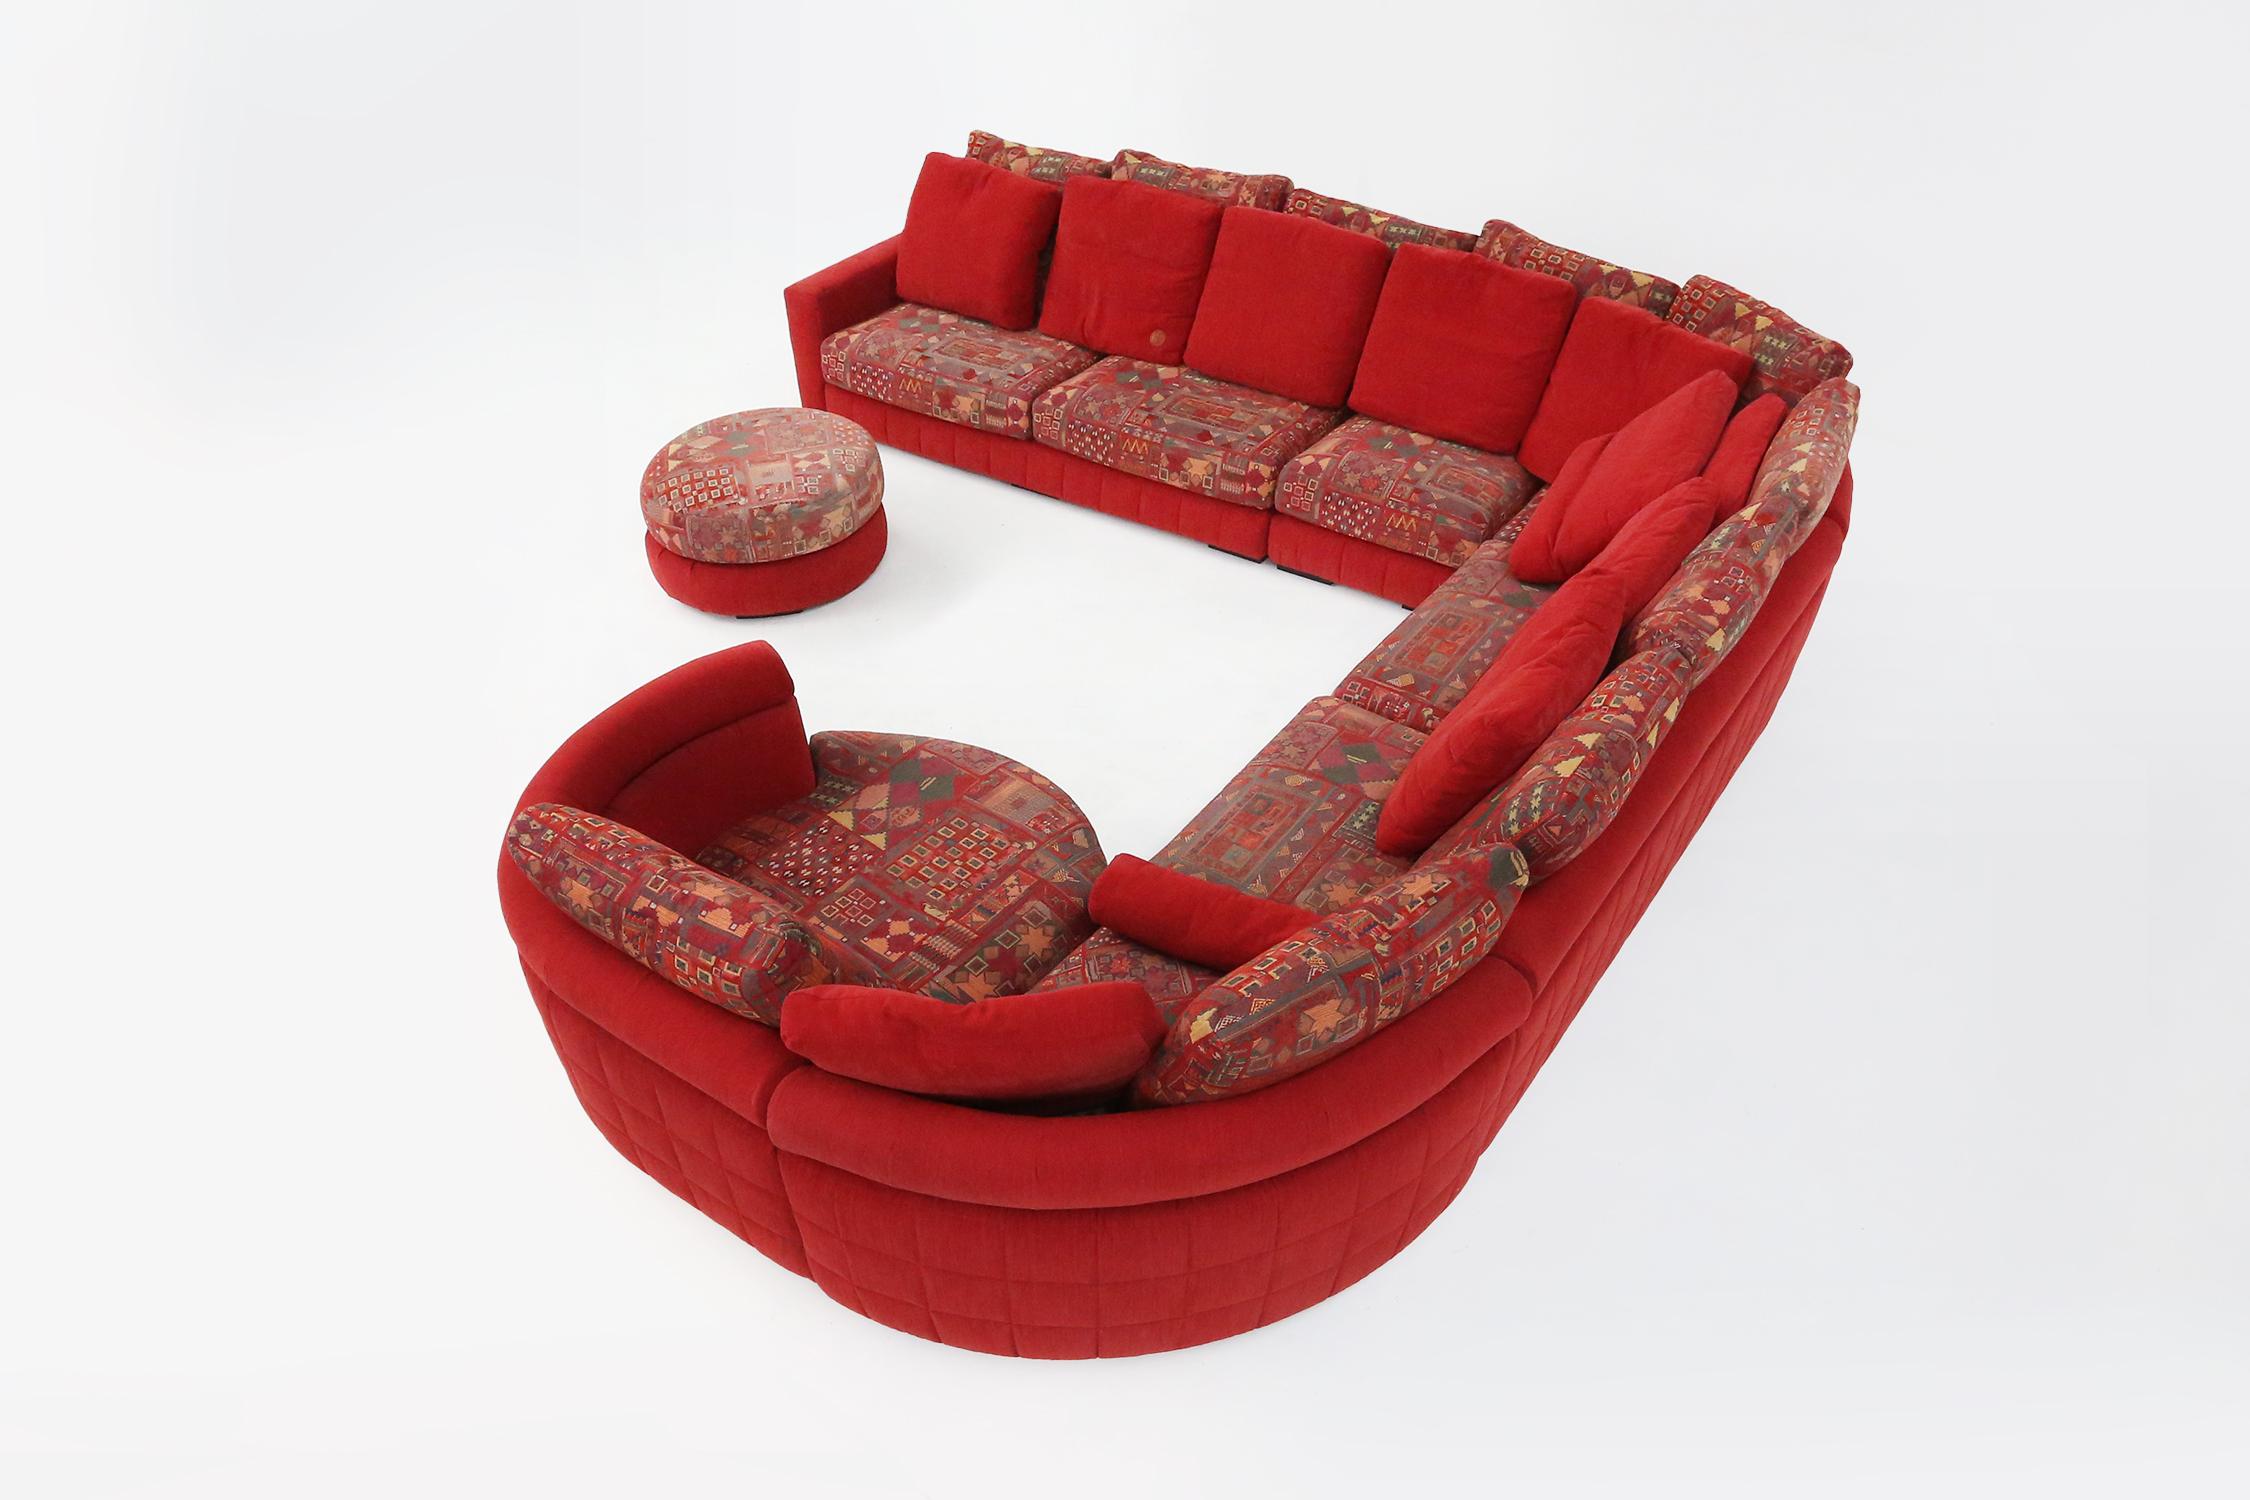 
Dieses modulare Sofa von Roche Bobois ist aus hochwertigen MATERIALEN gefertigt und mit einem eleganten roten Bezug versehen, der jeden Raum auflockert.

Dank der verschiedenen Sitzflächen, die Sie kombinieren oder einzeln nutzen können, können Sie